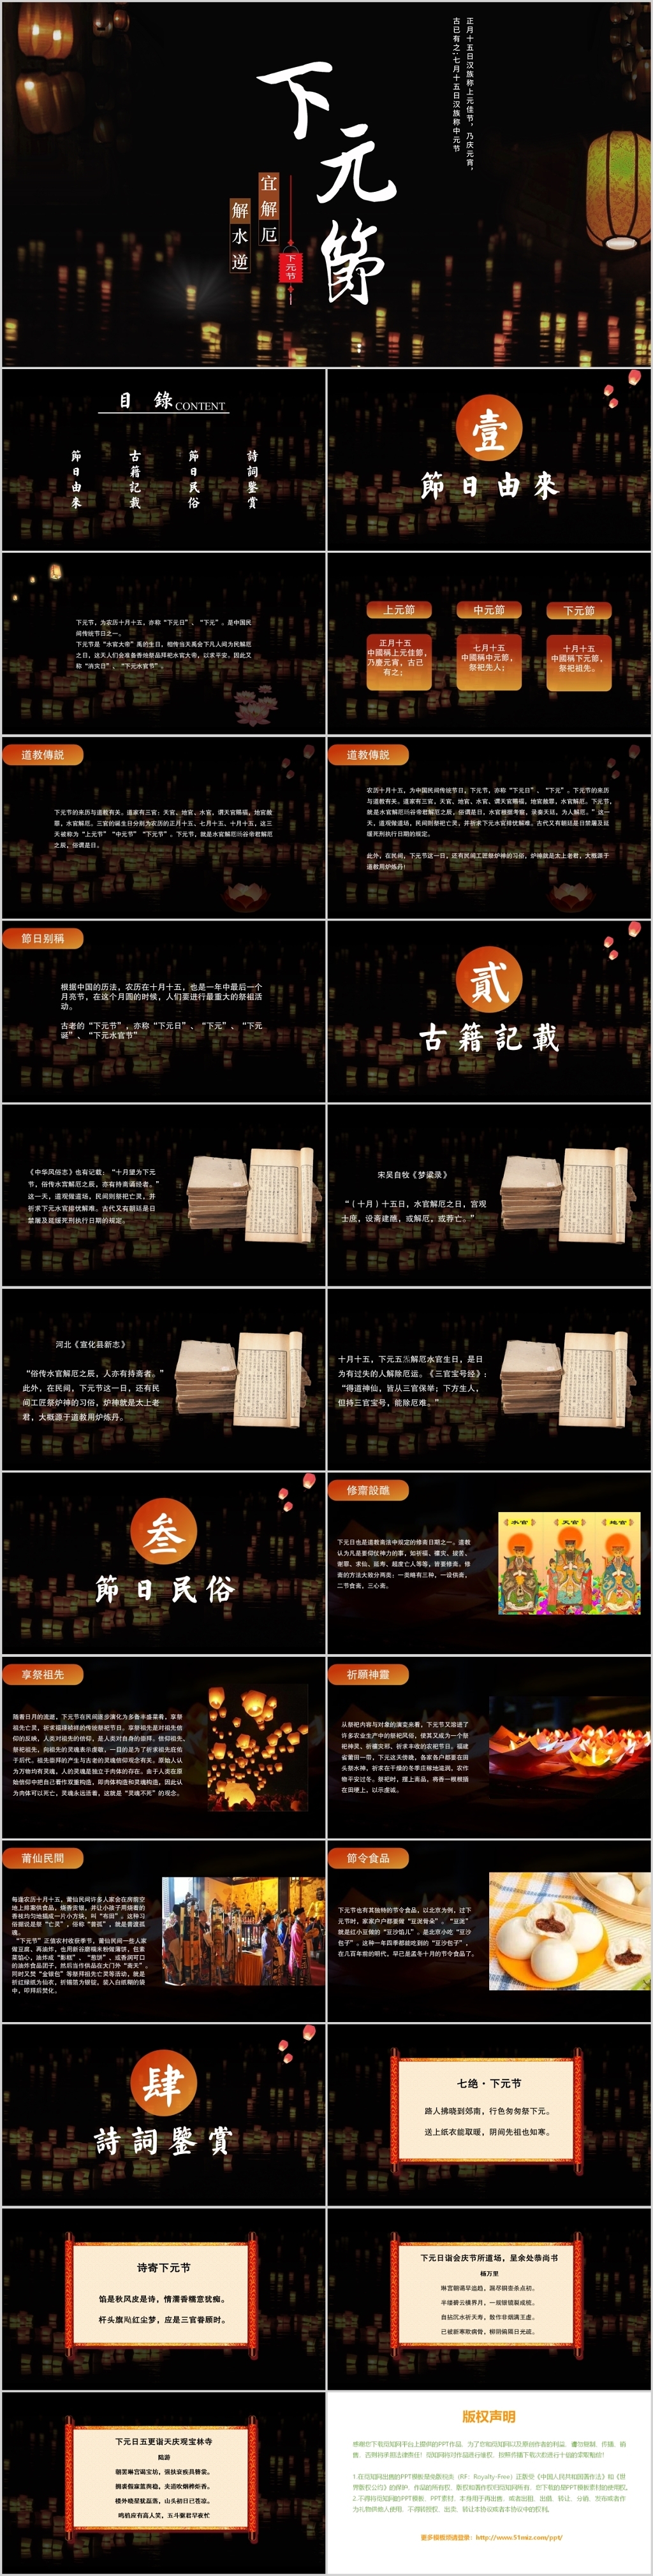 中国传统民俗节日下元节PPT模板